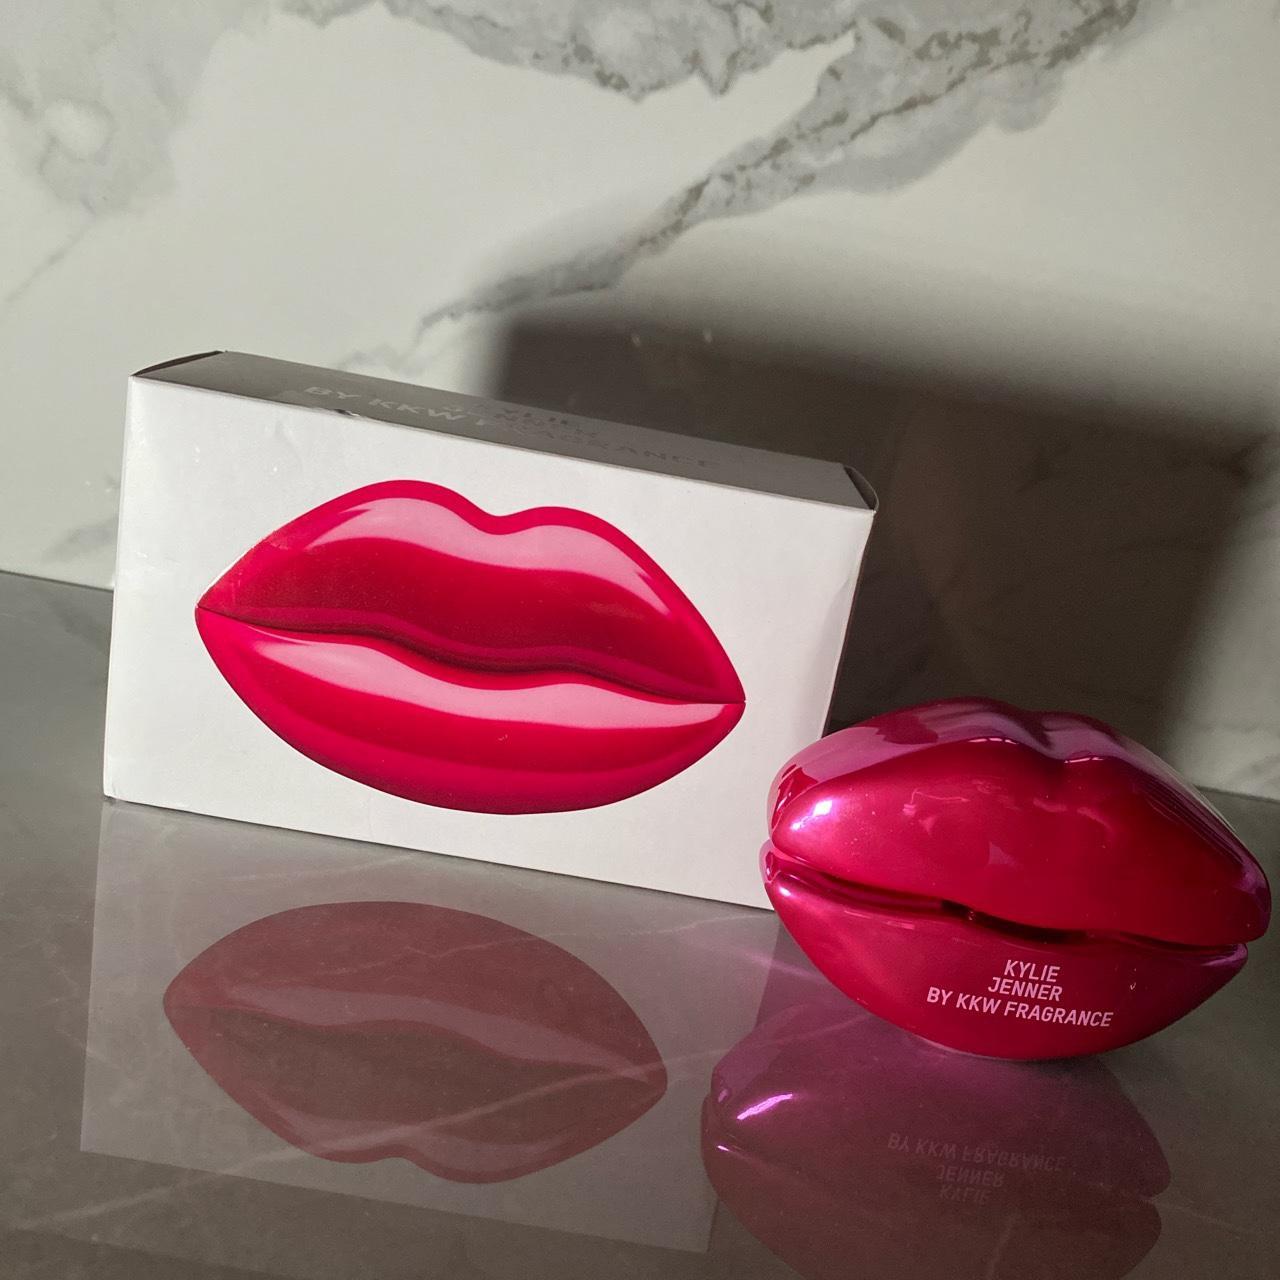 kkw fragrance: kylie jenner pink - limited edition... - Depop